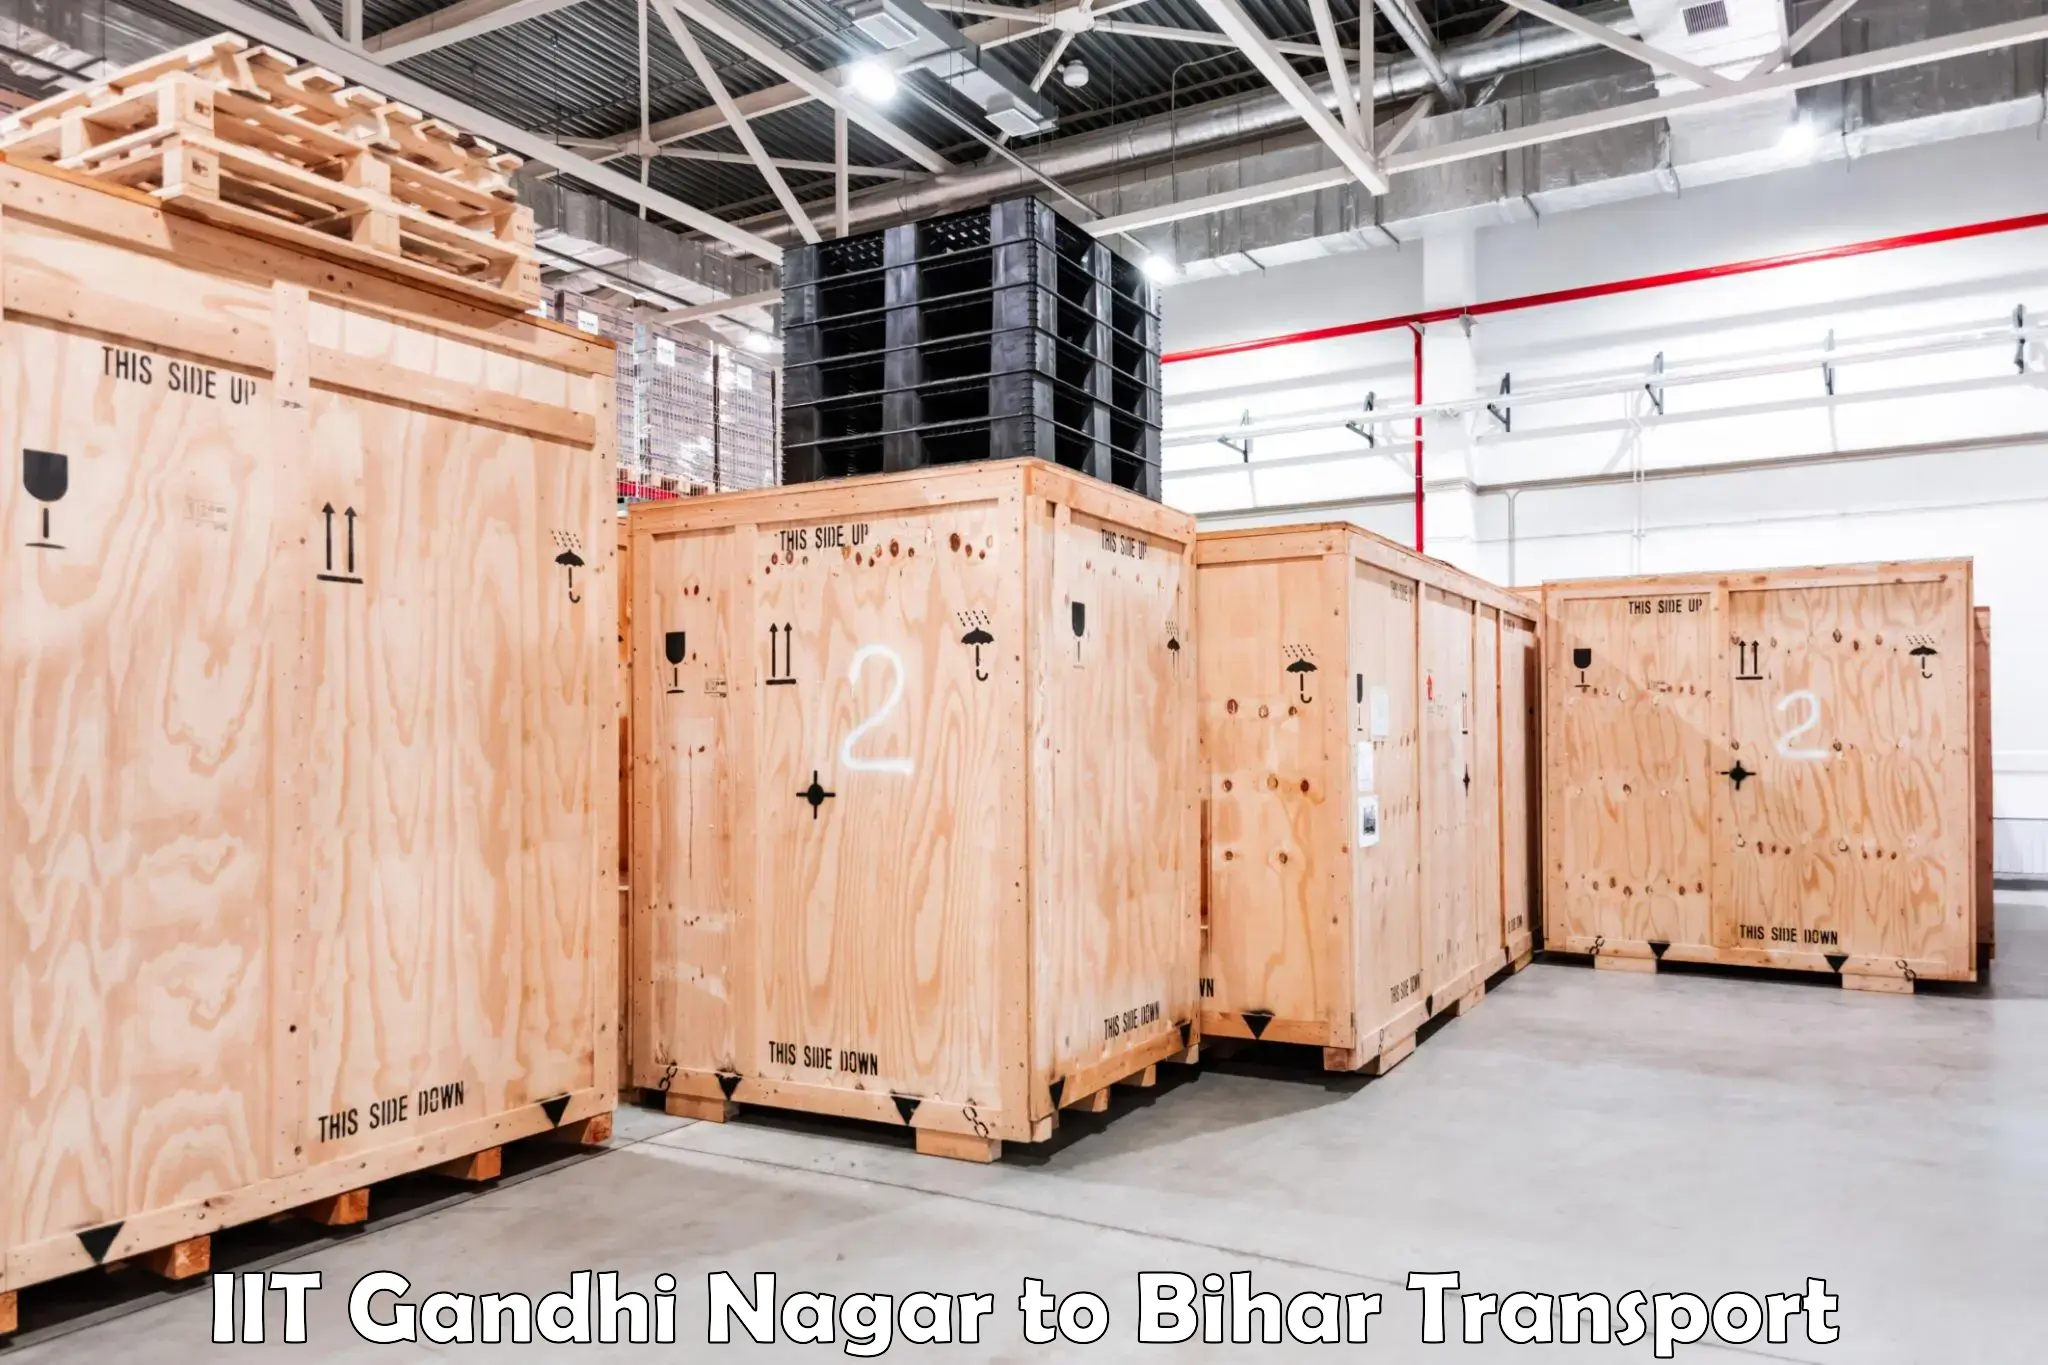 Container transport service IIT Gandhi Nagar to Lakhisarai